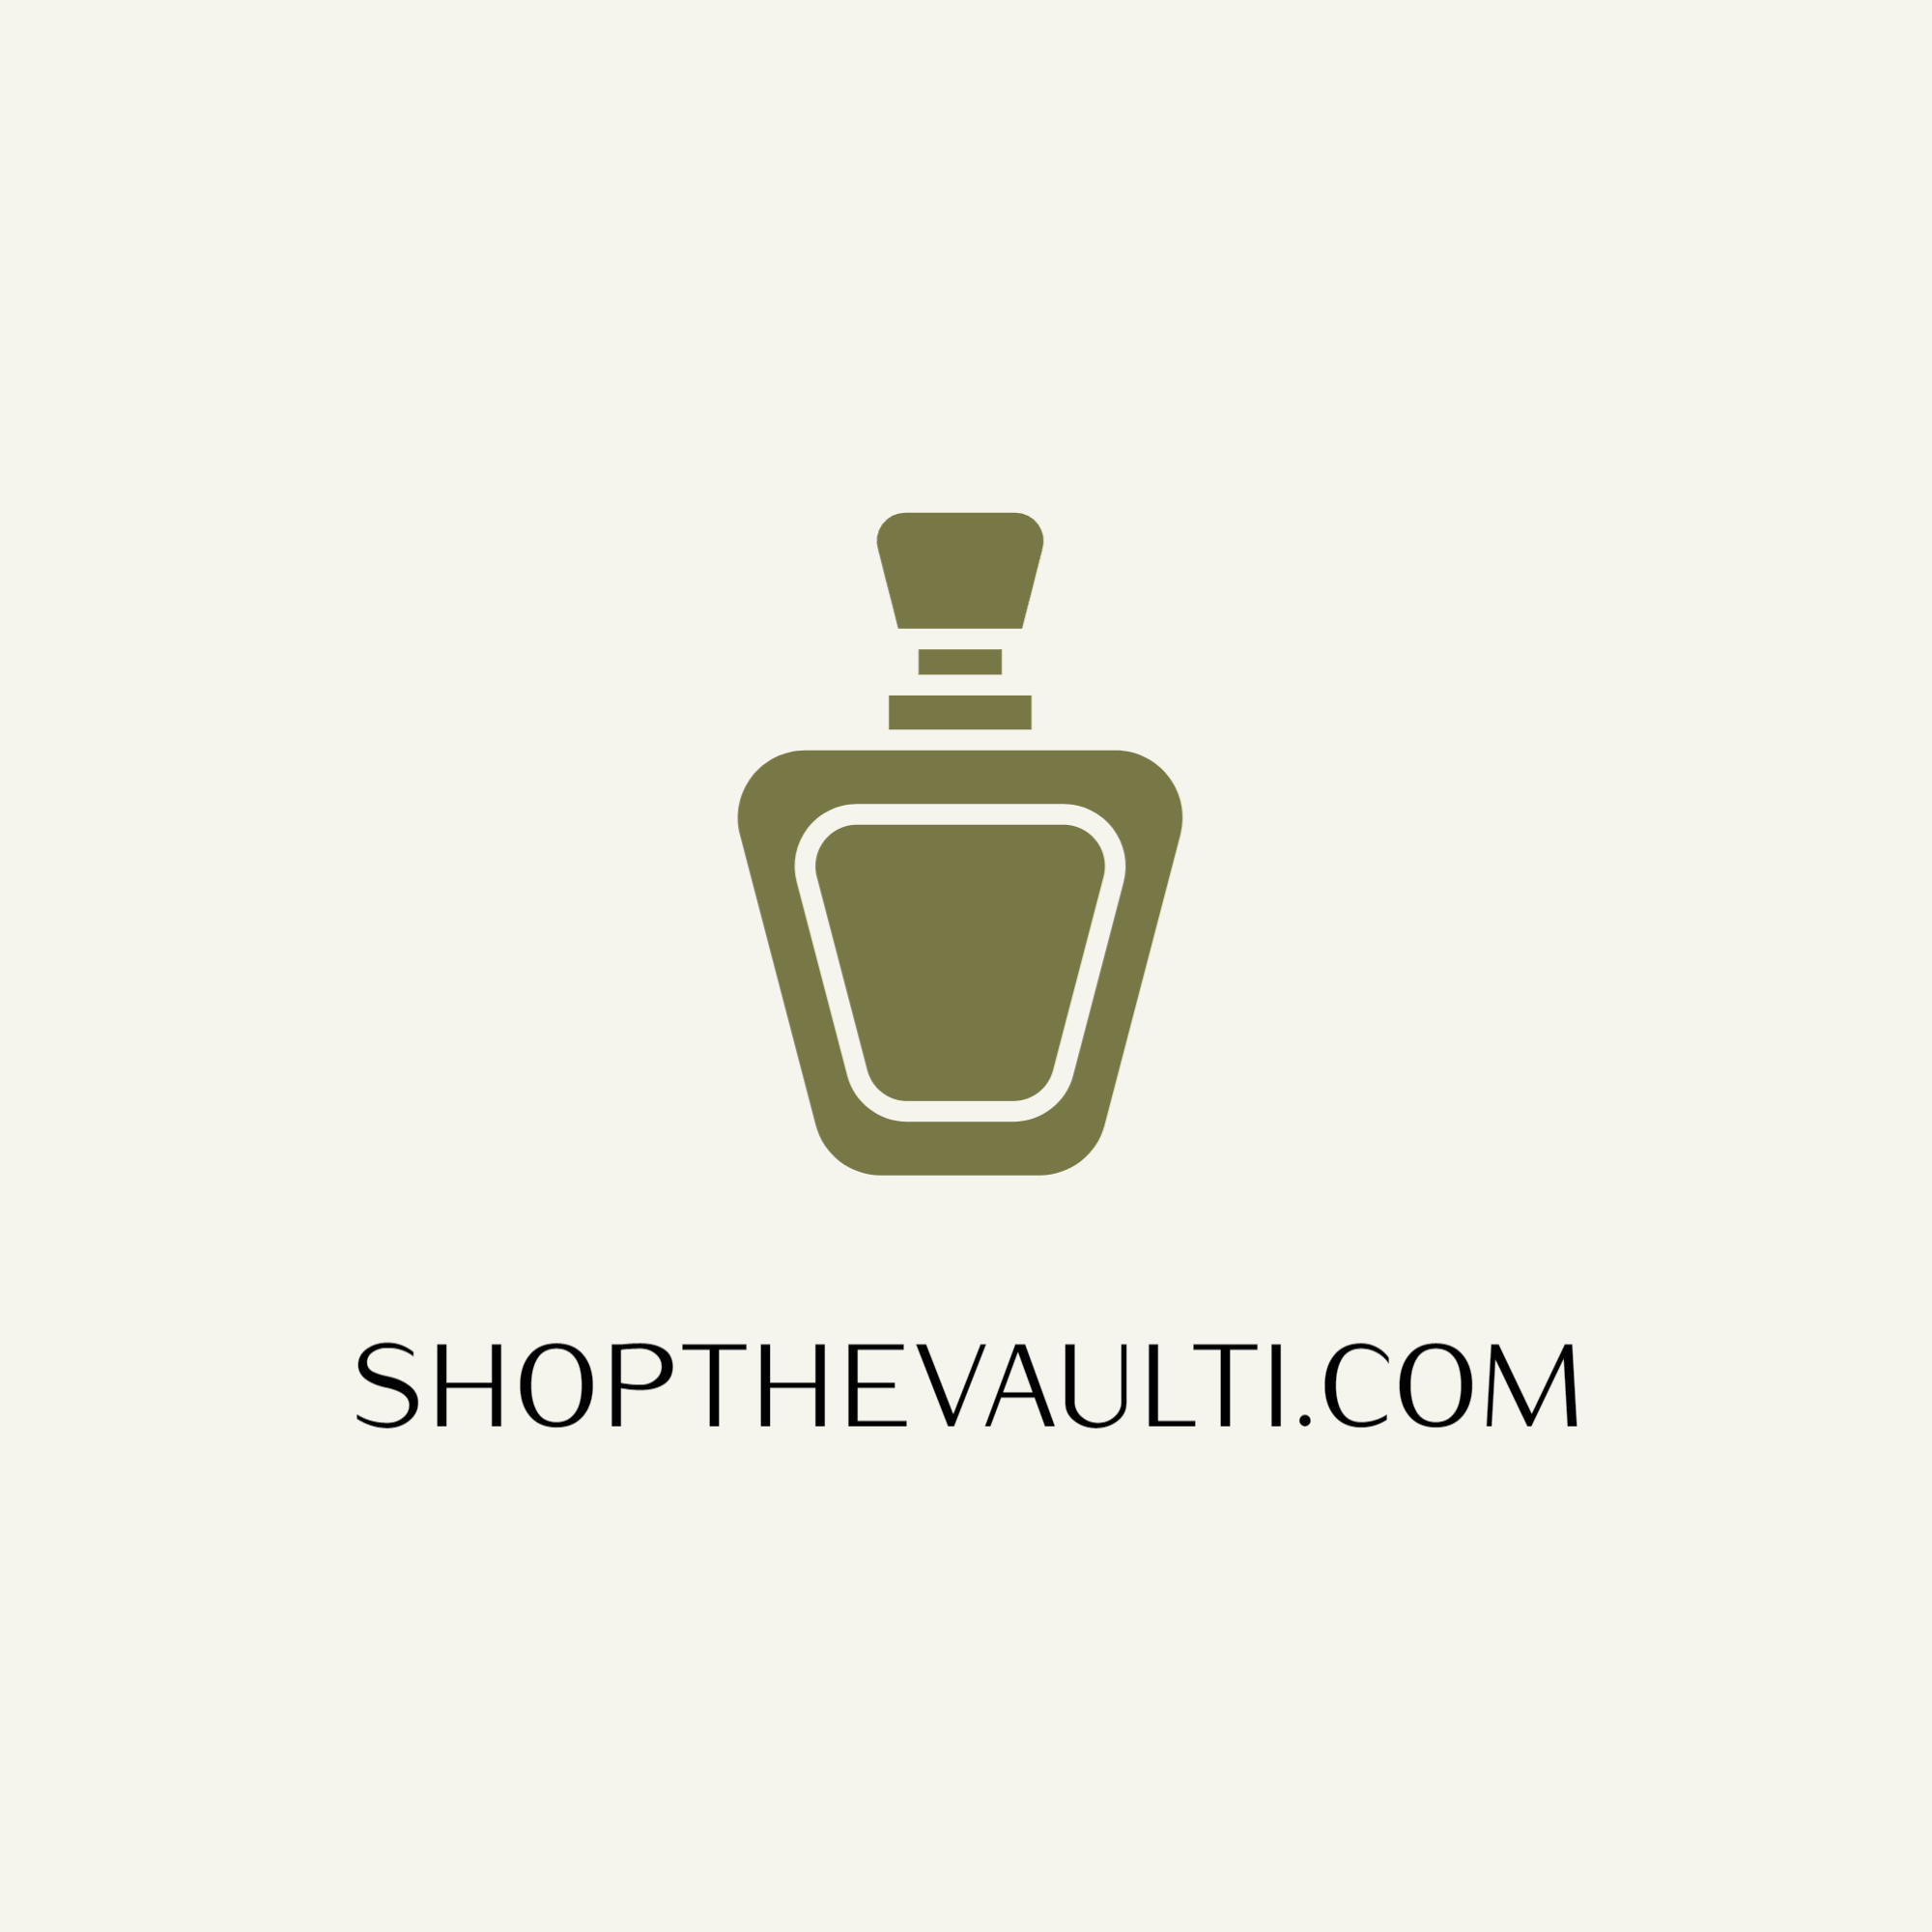 shopthevaulti.com